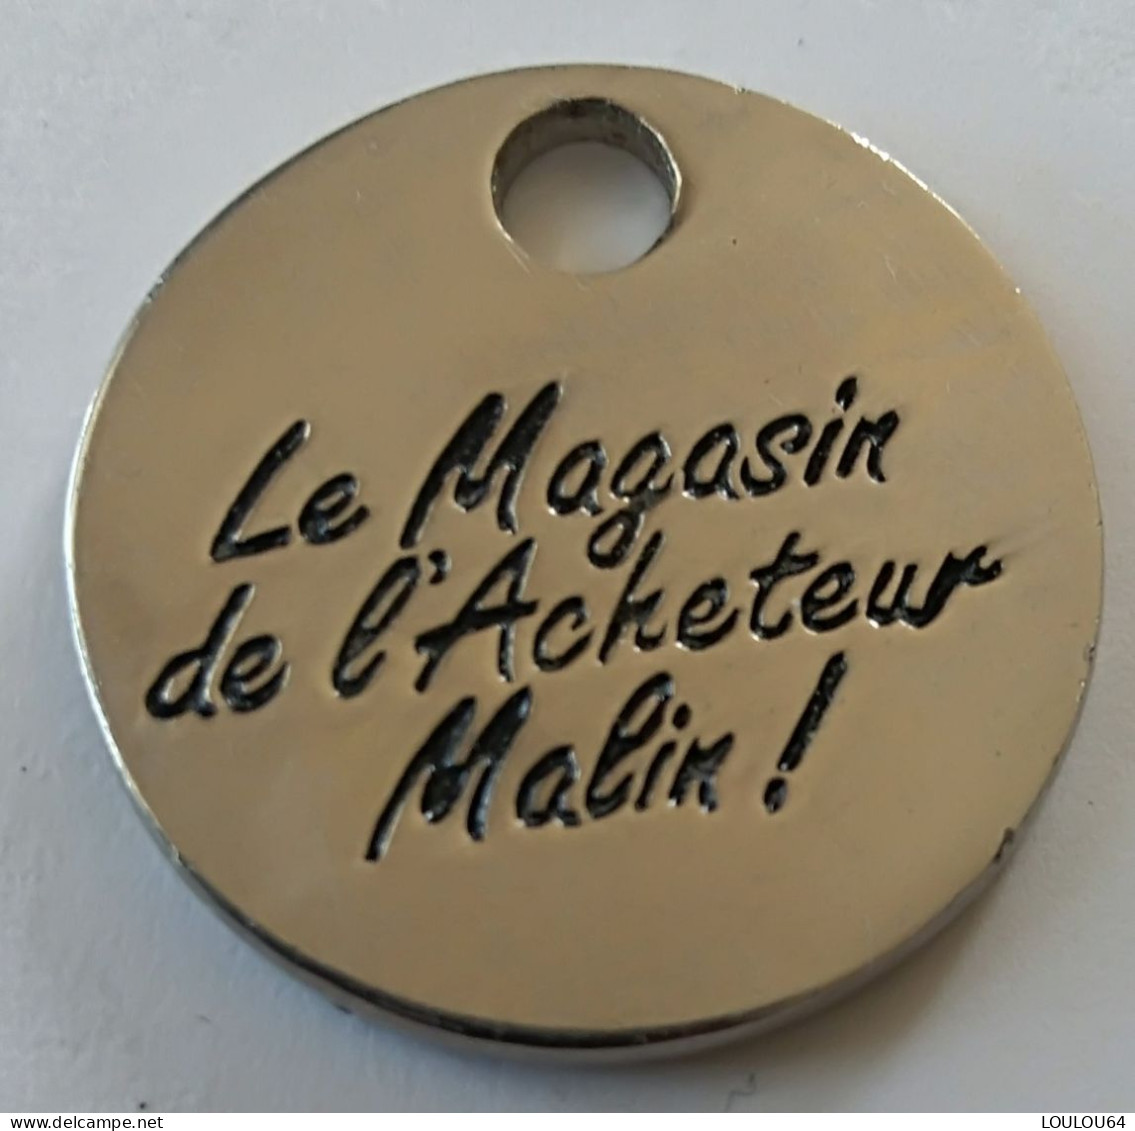 Jeton De Caddie - MDA - ELECTROMENAGER - Le Magasin De L'Acheteur Malin ! - En Métal - (1) - - Jetons De Caddies